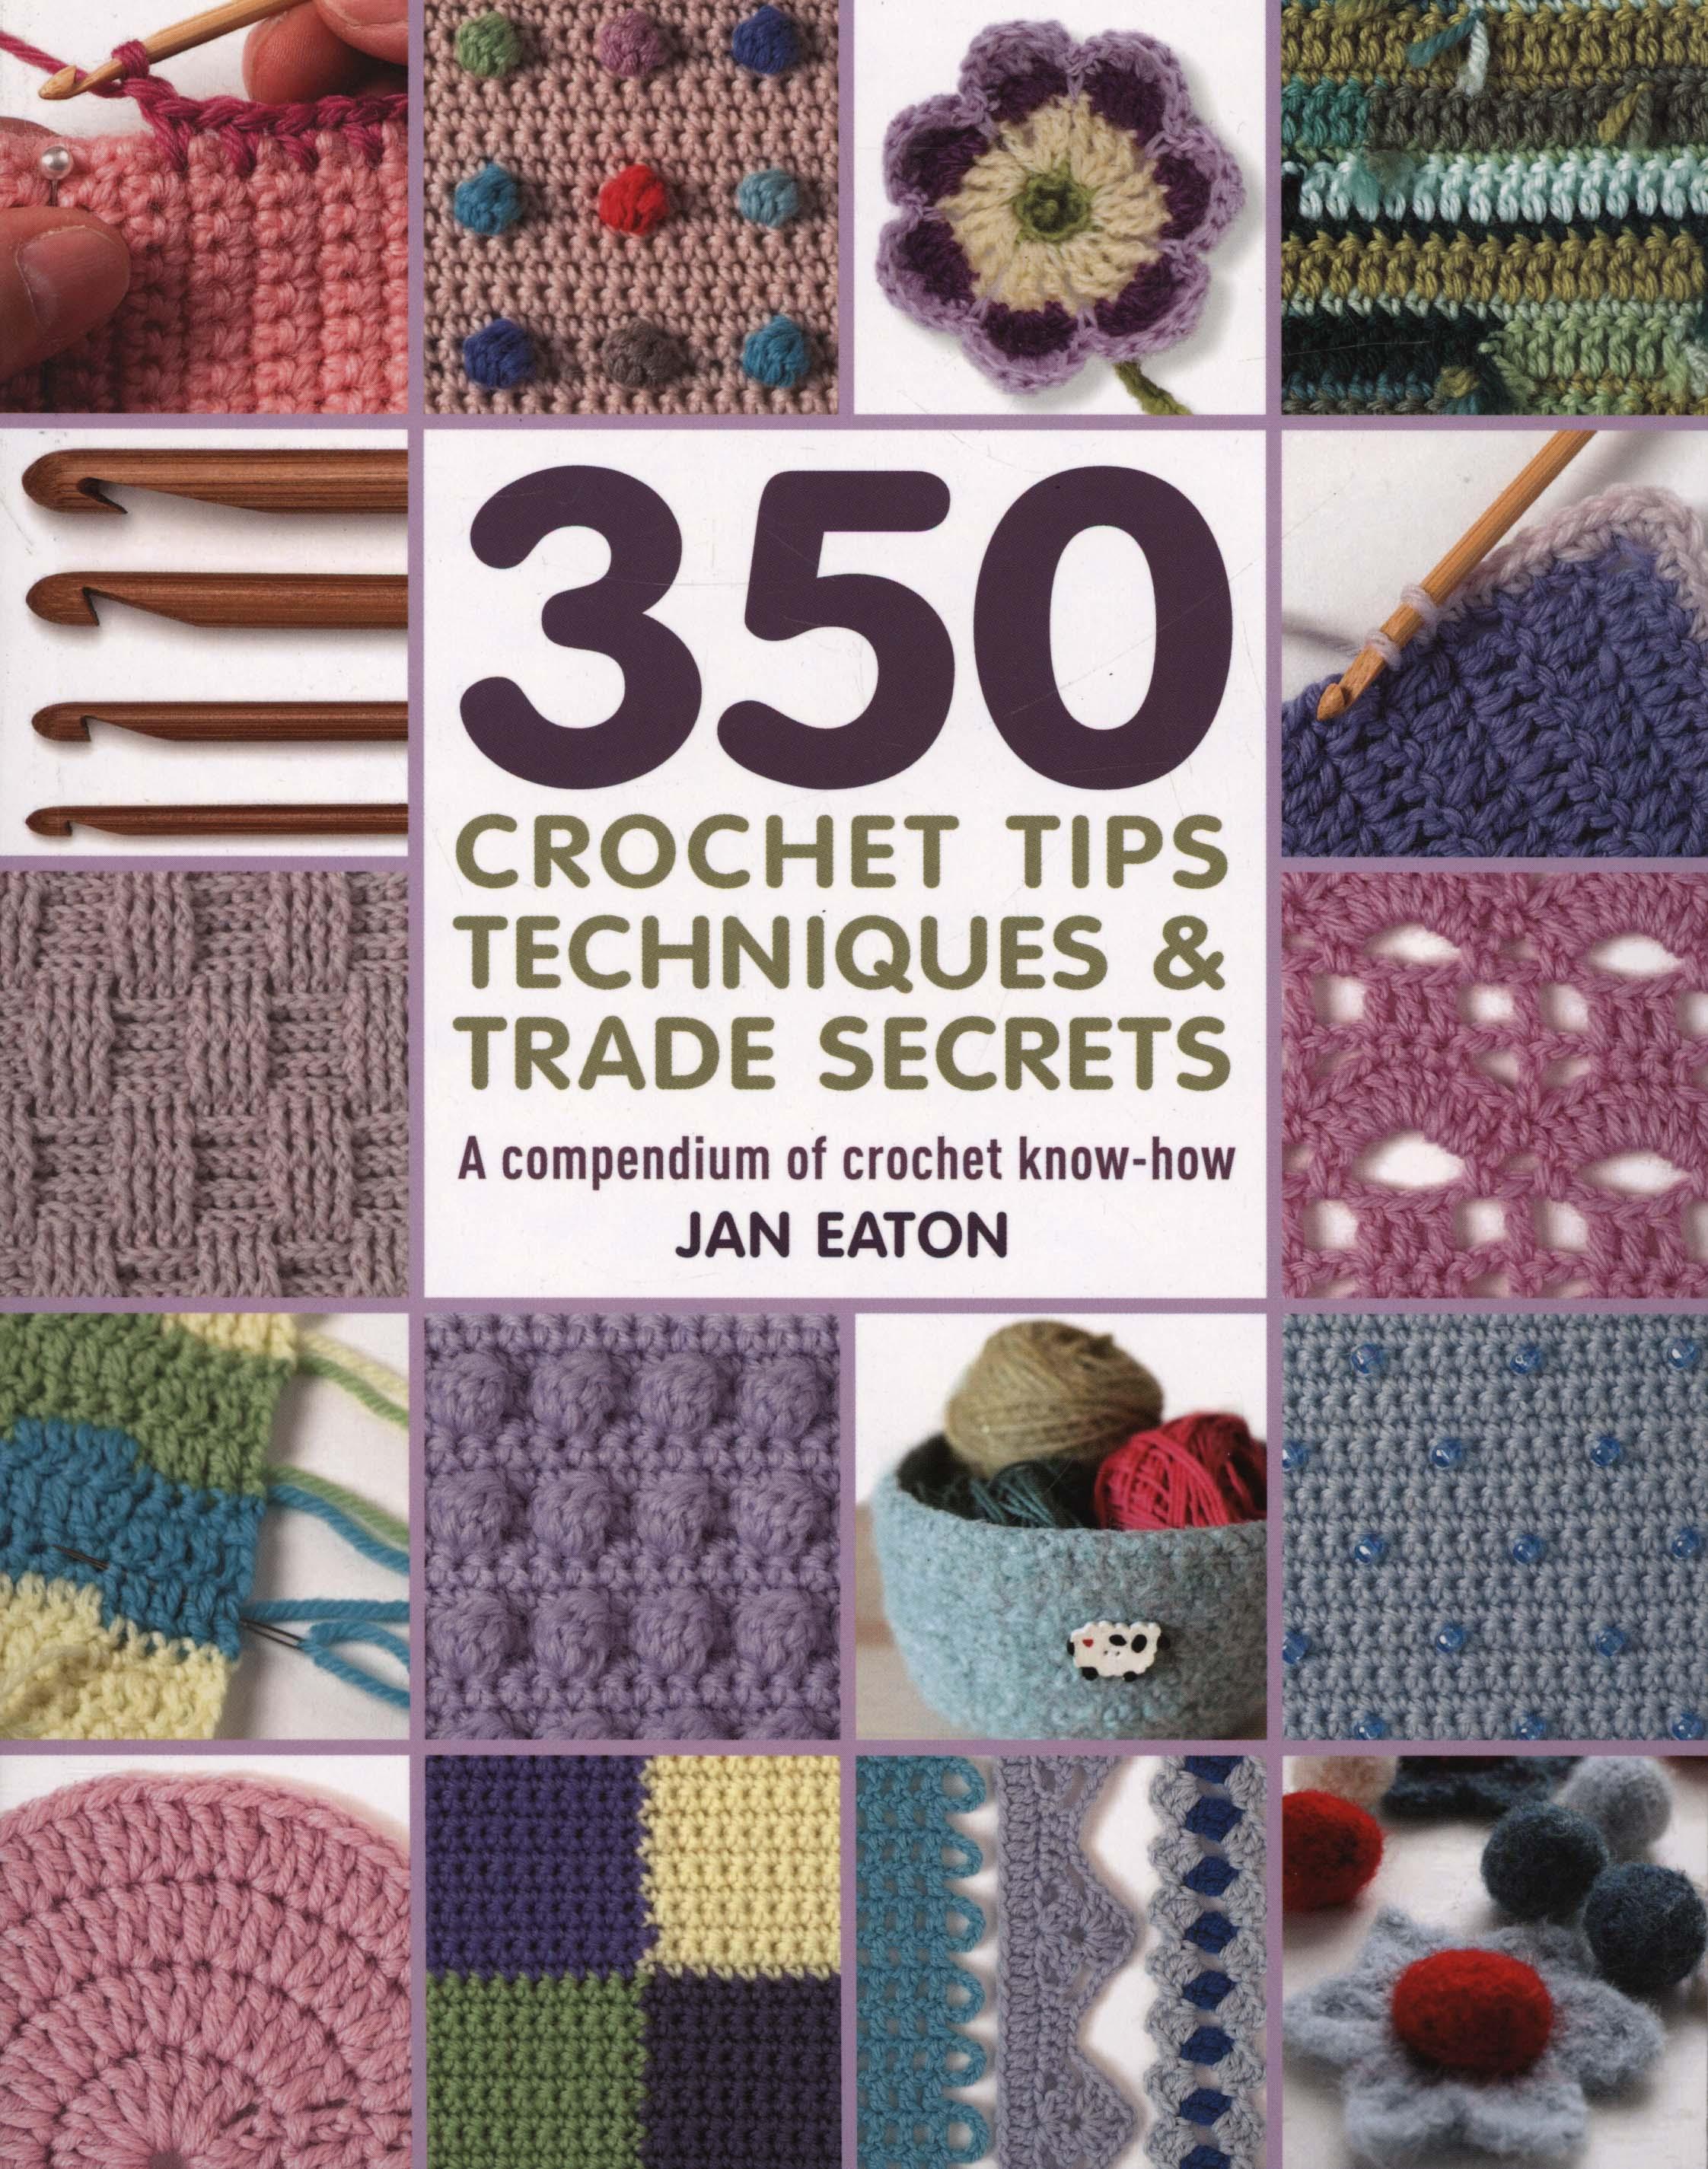 350+ Crochet Tips, Techniques & Trade Secrets